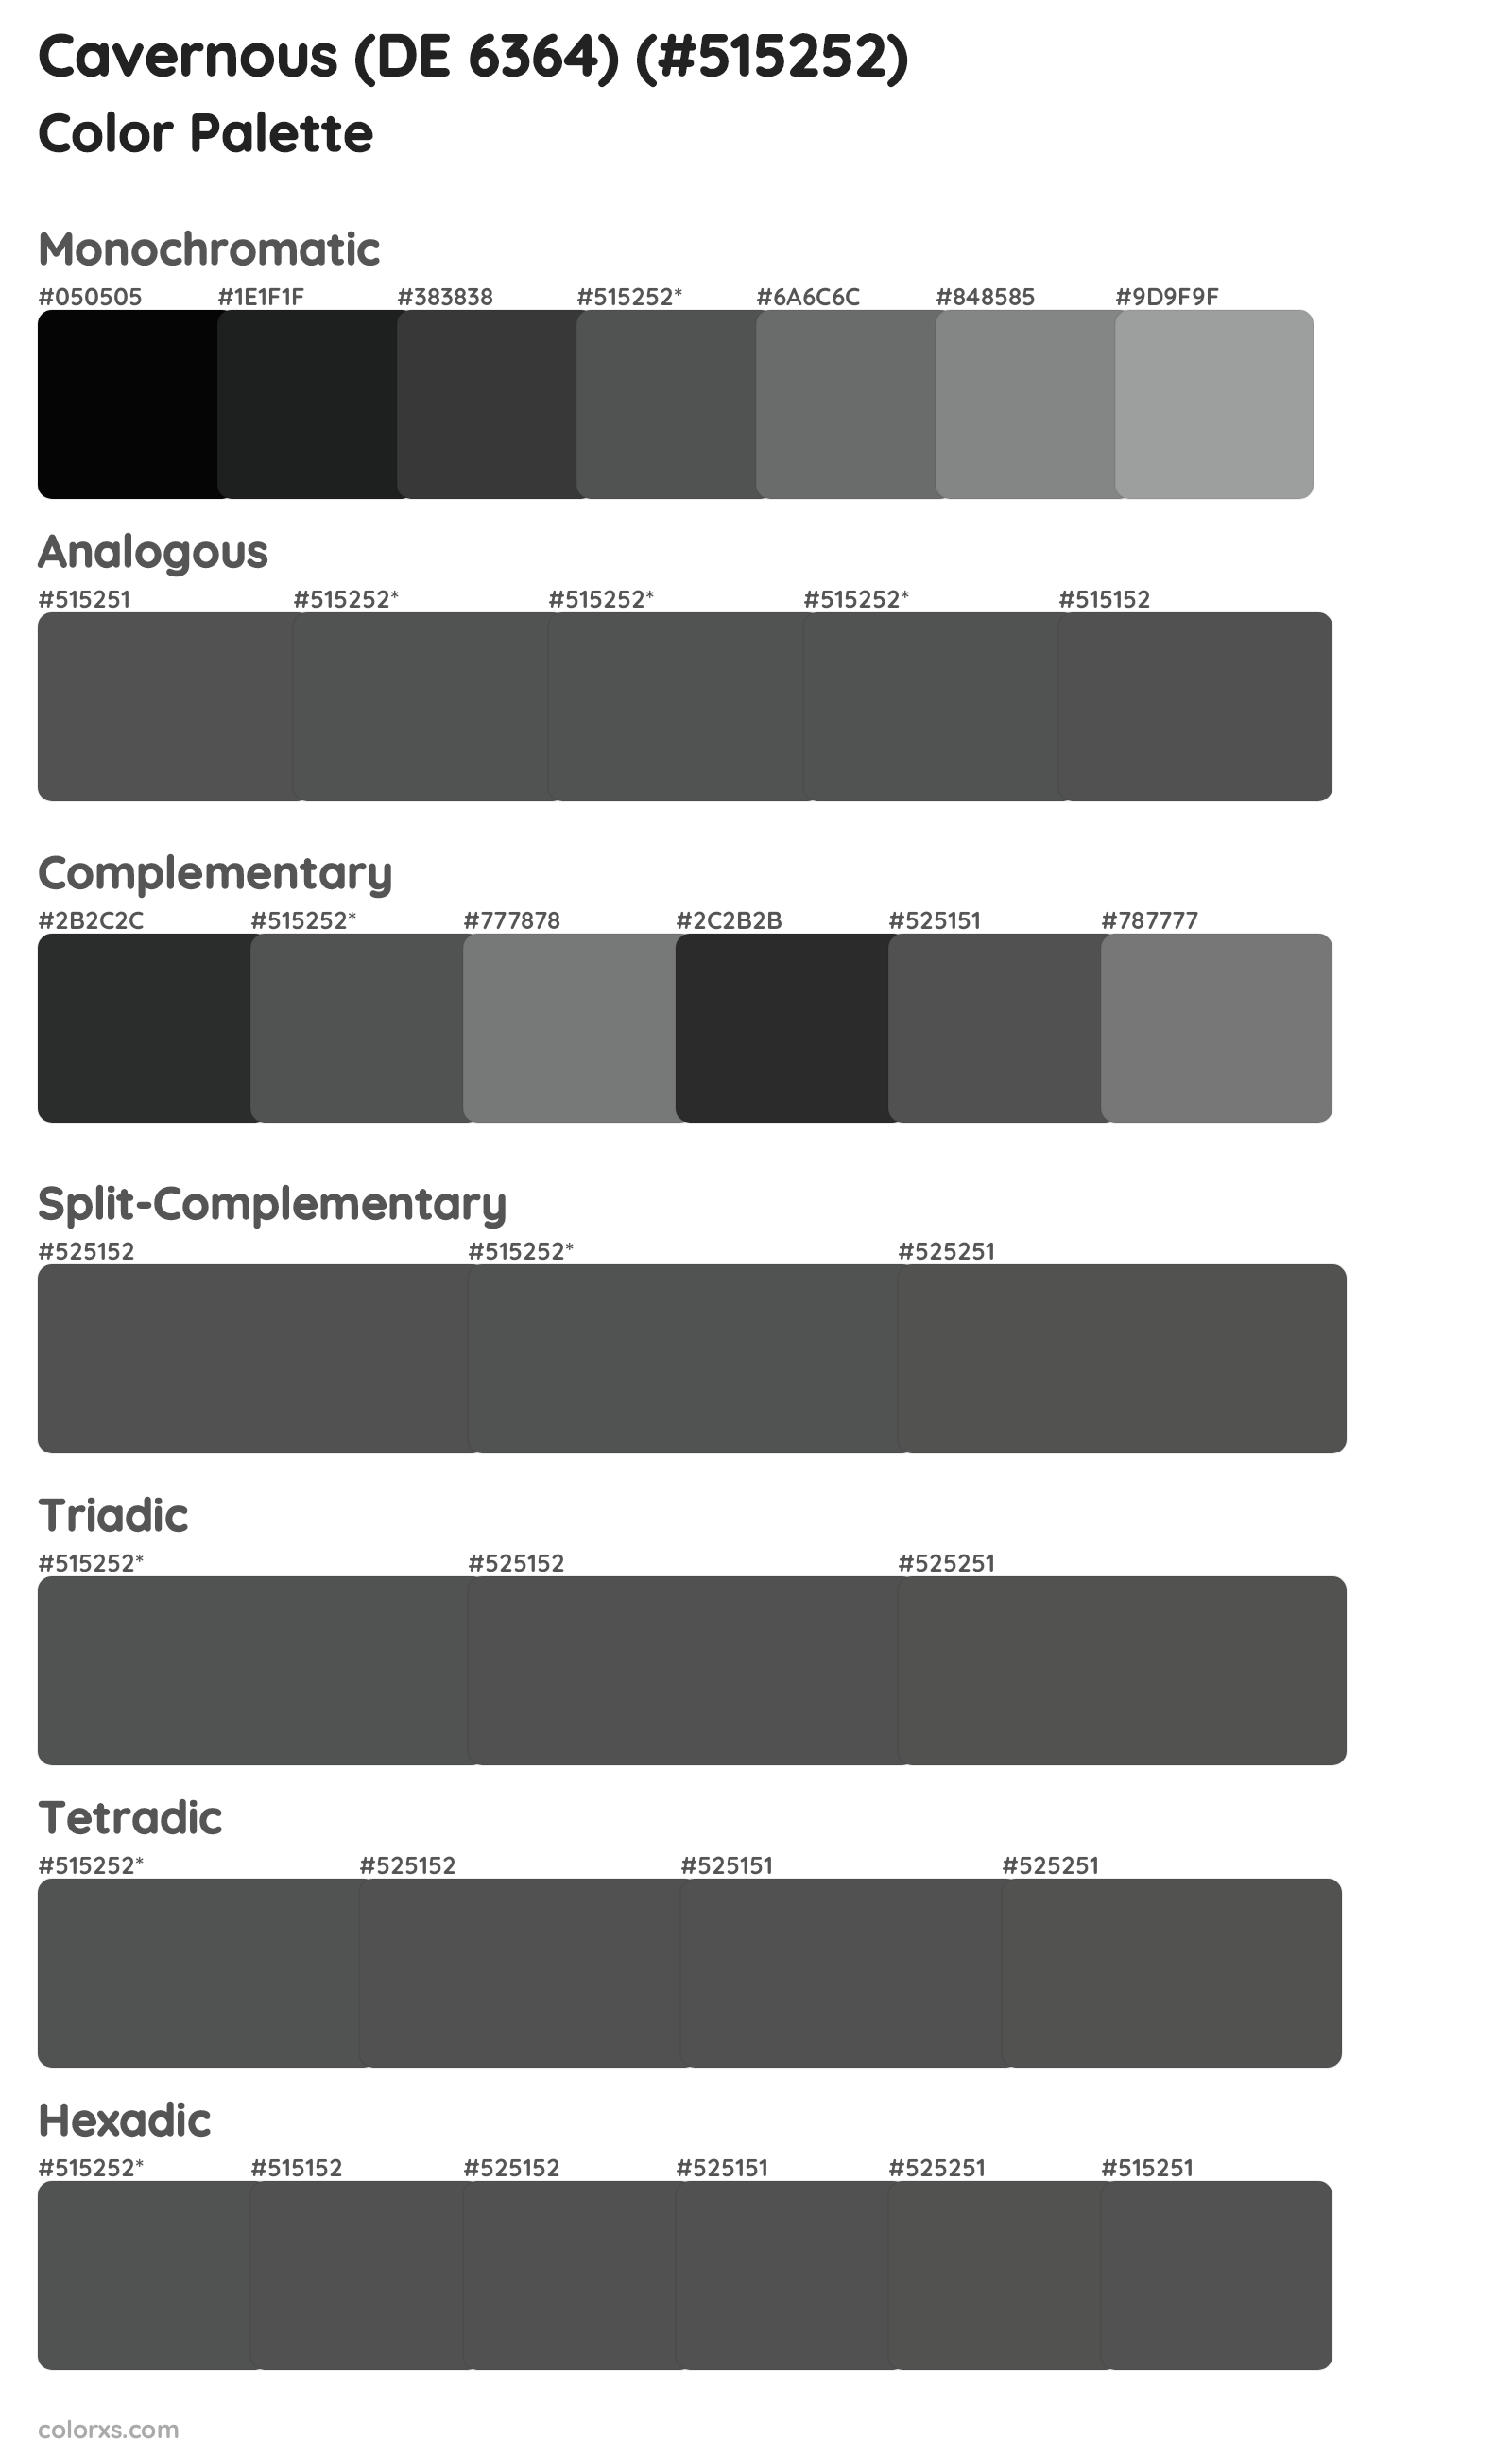 Cavernous (DE 6364) Color Scheme Palettes